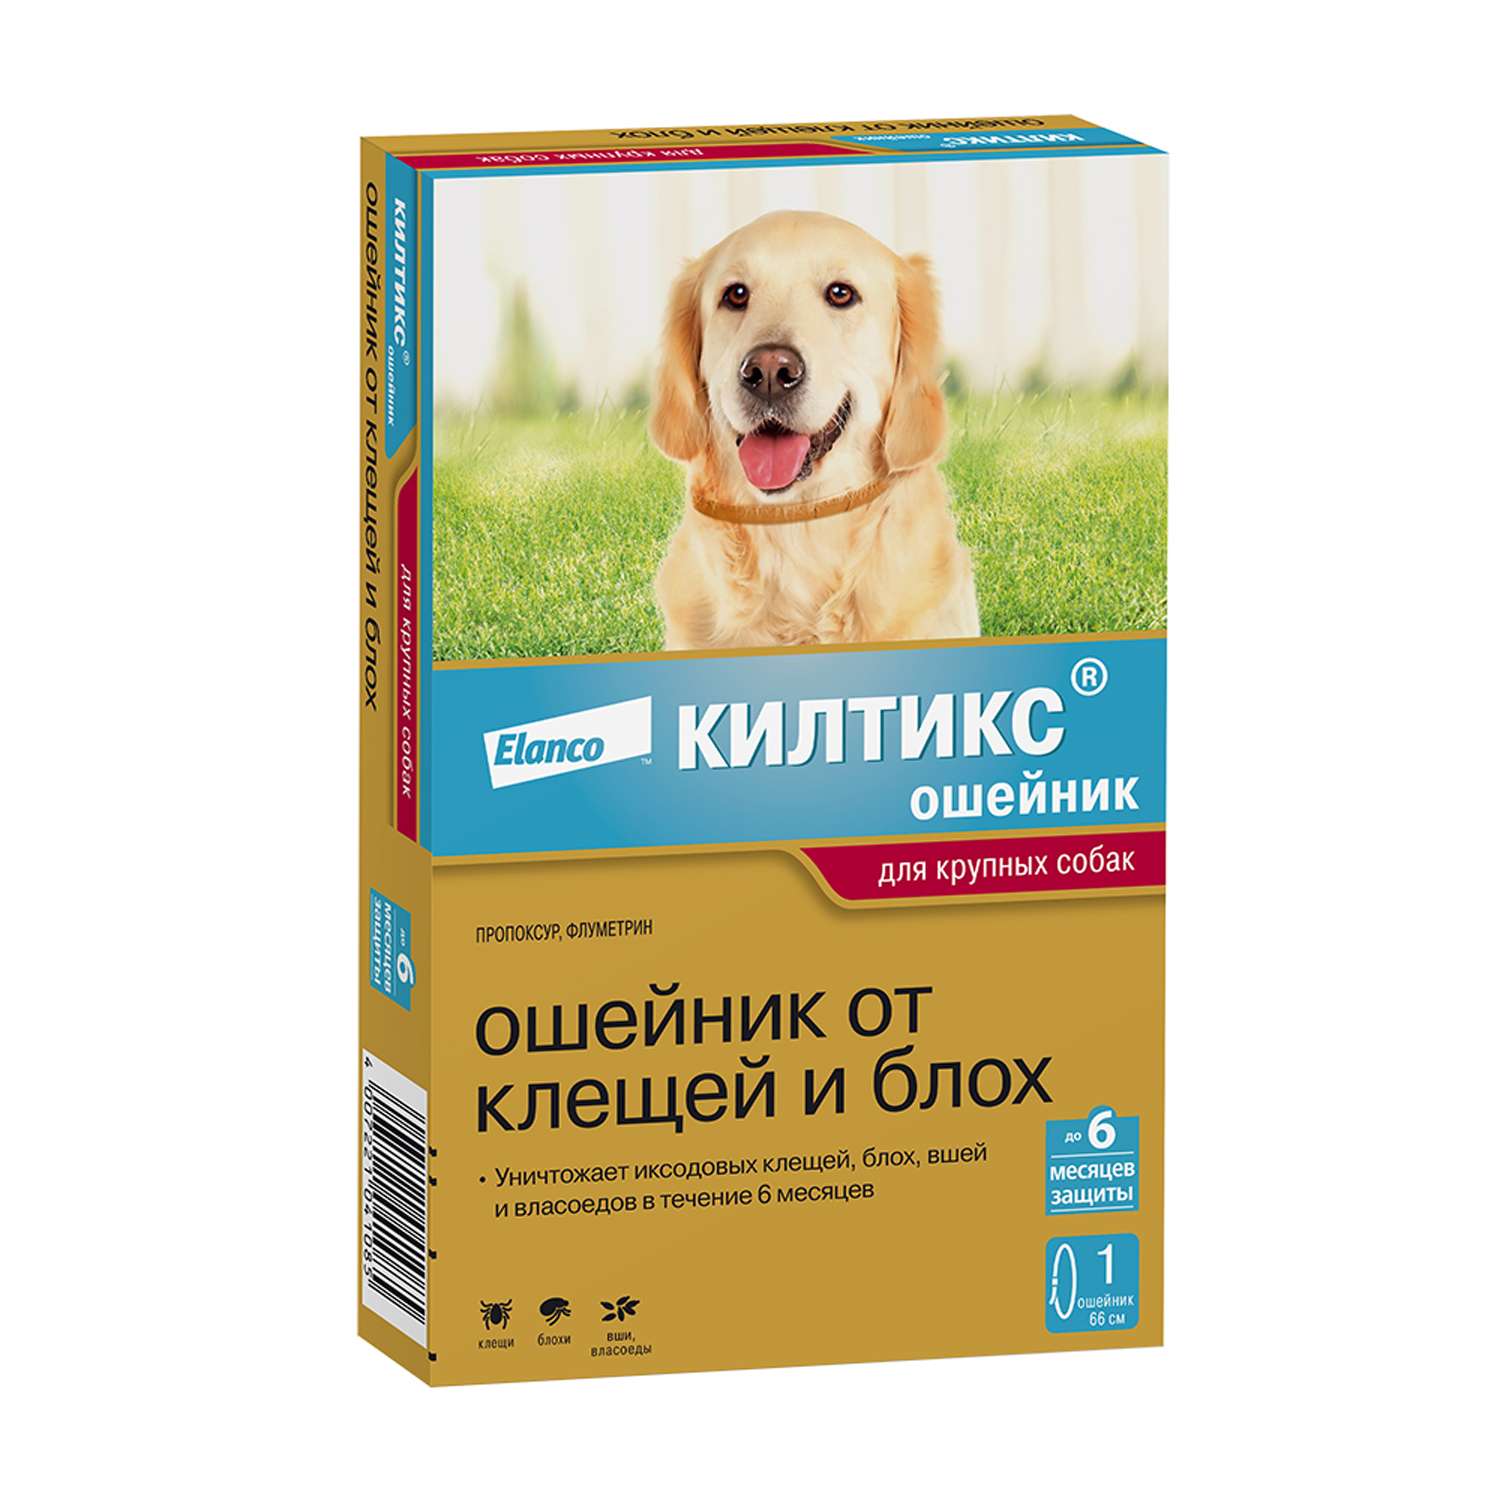 Ошейник для собак Elanco Килтикс против блох и клещей 66см - фото 1